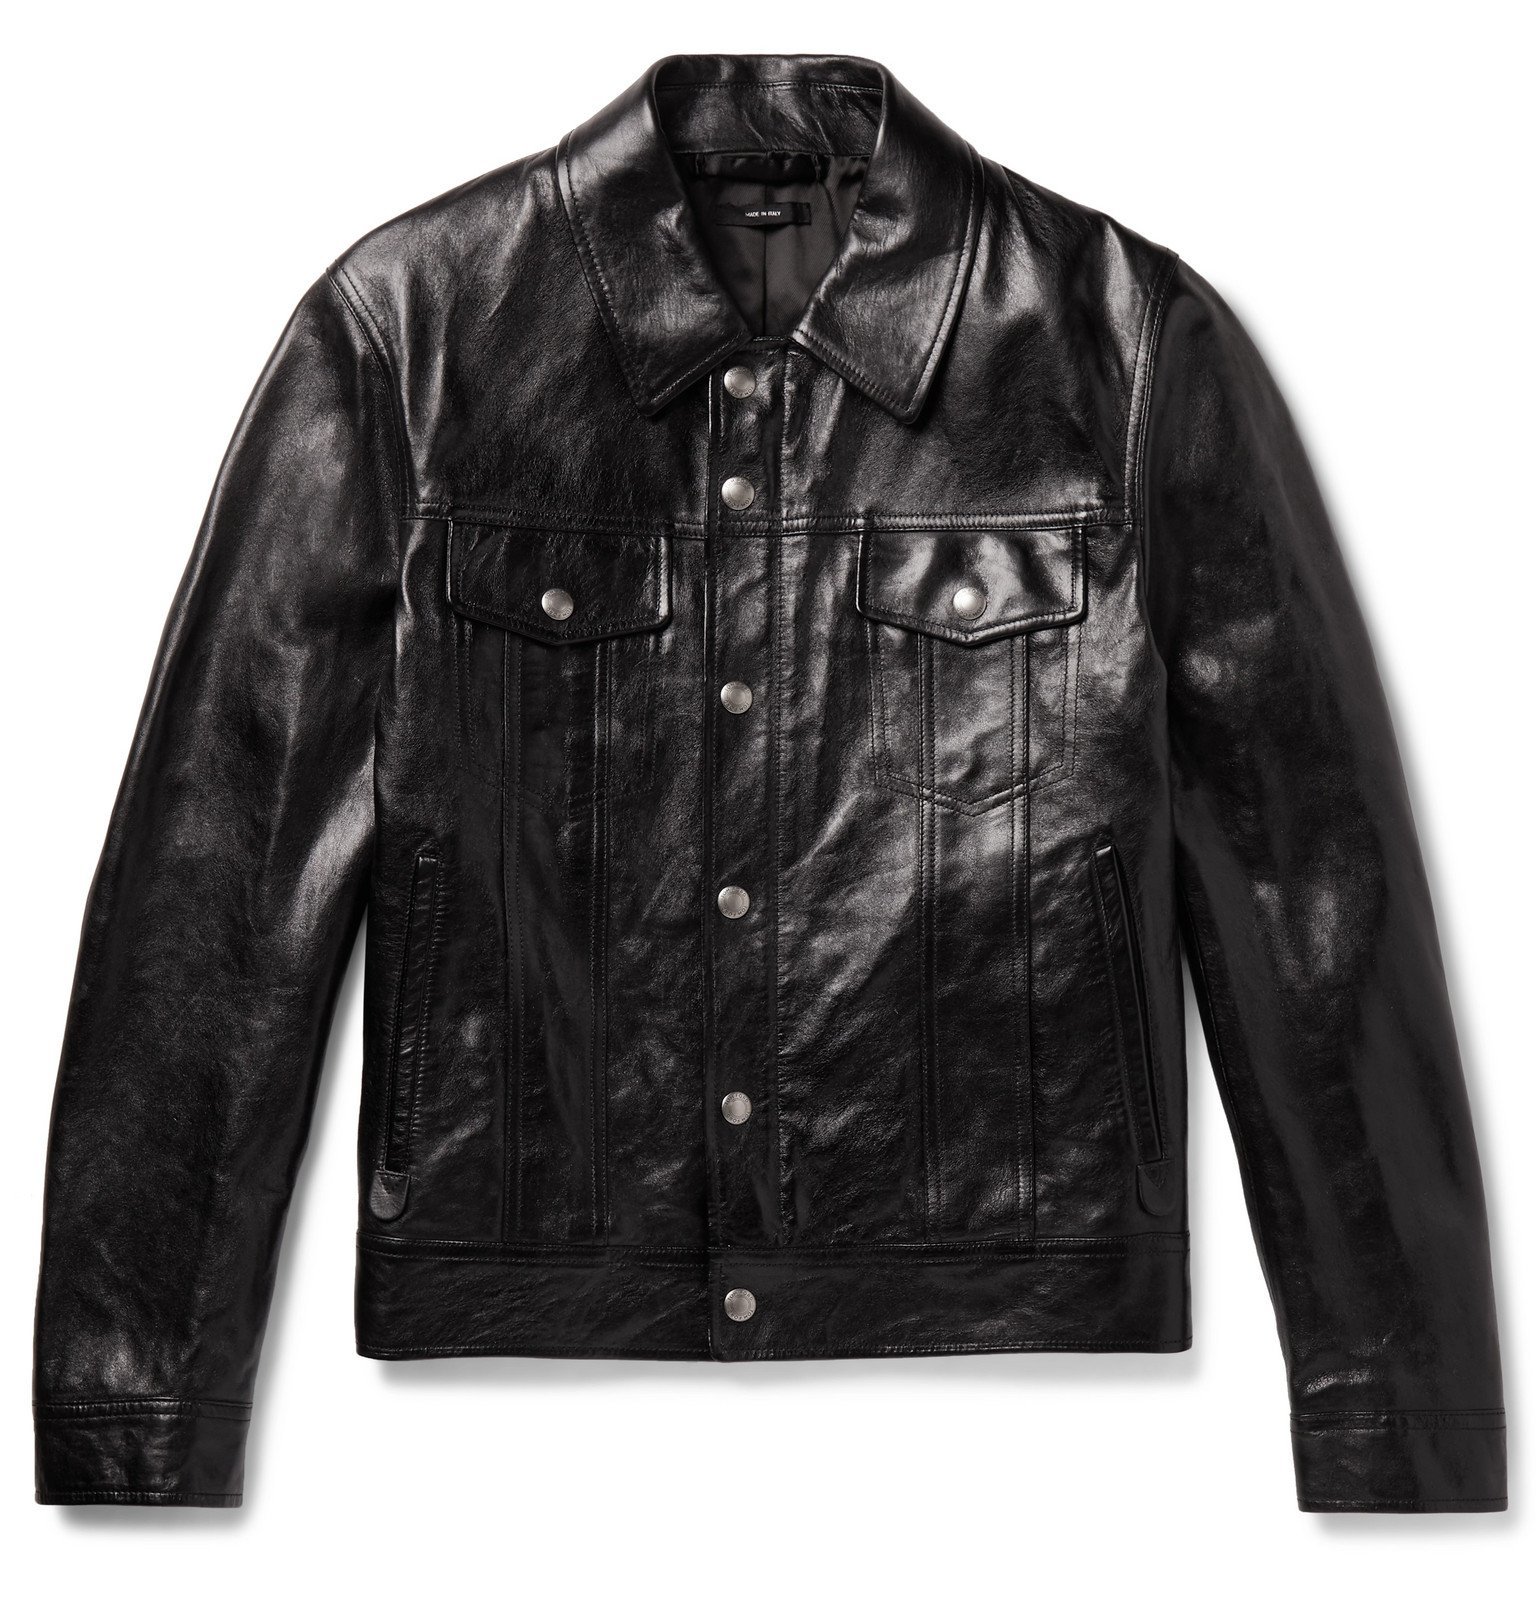 TOM FORD - Polished-Leather Trucker Jacket - Black TOM FORD